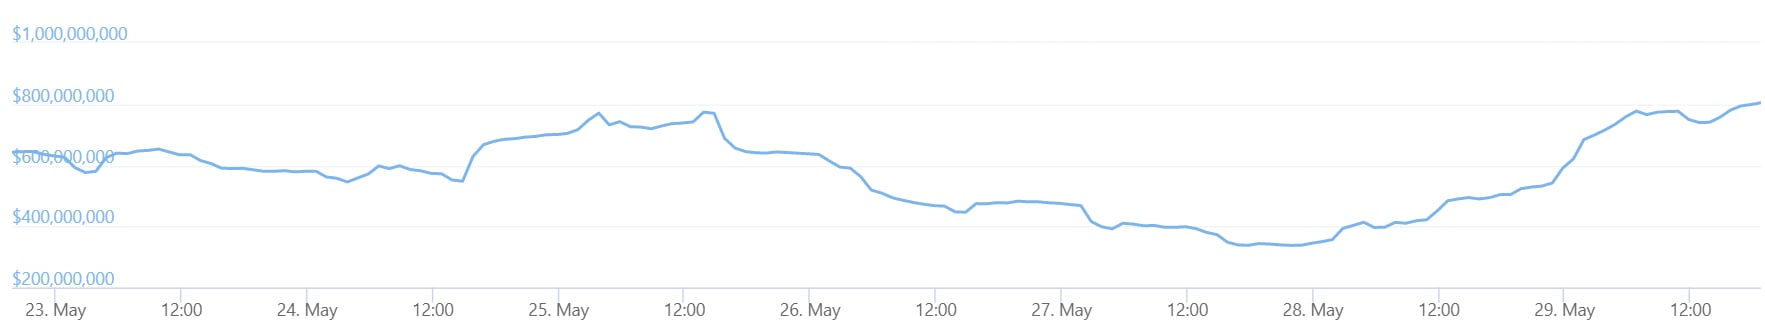 一张K线走势图显示了韩国最受欢迎的加密货币交易所 Upbit 的一周交易量。